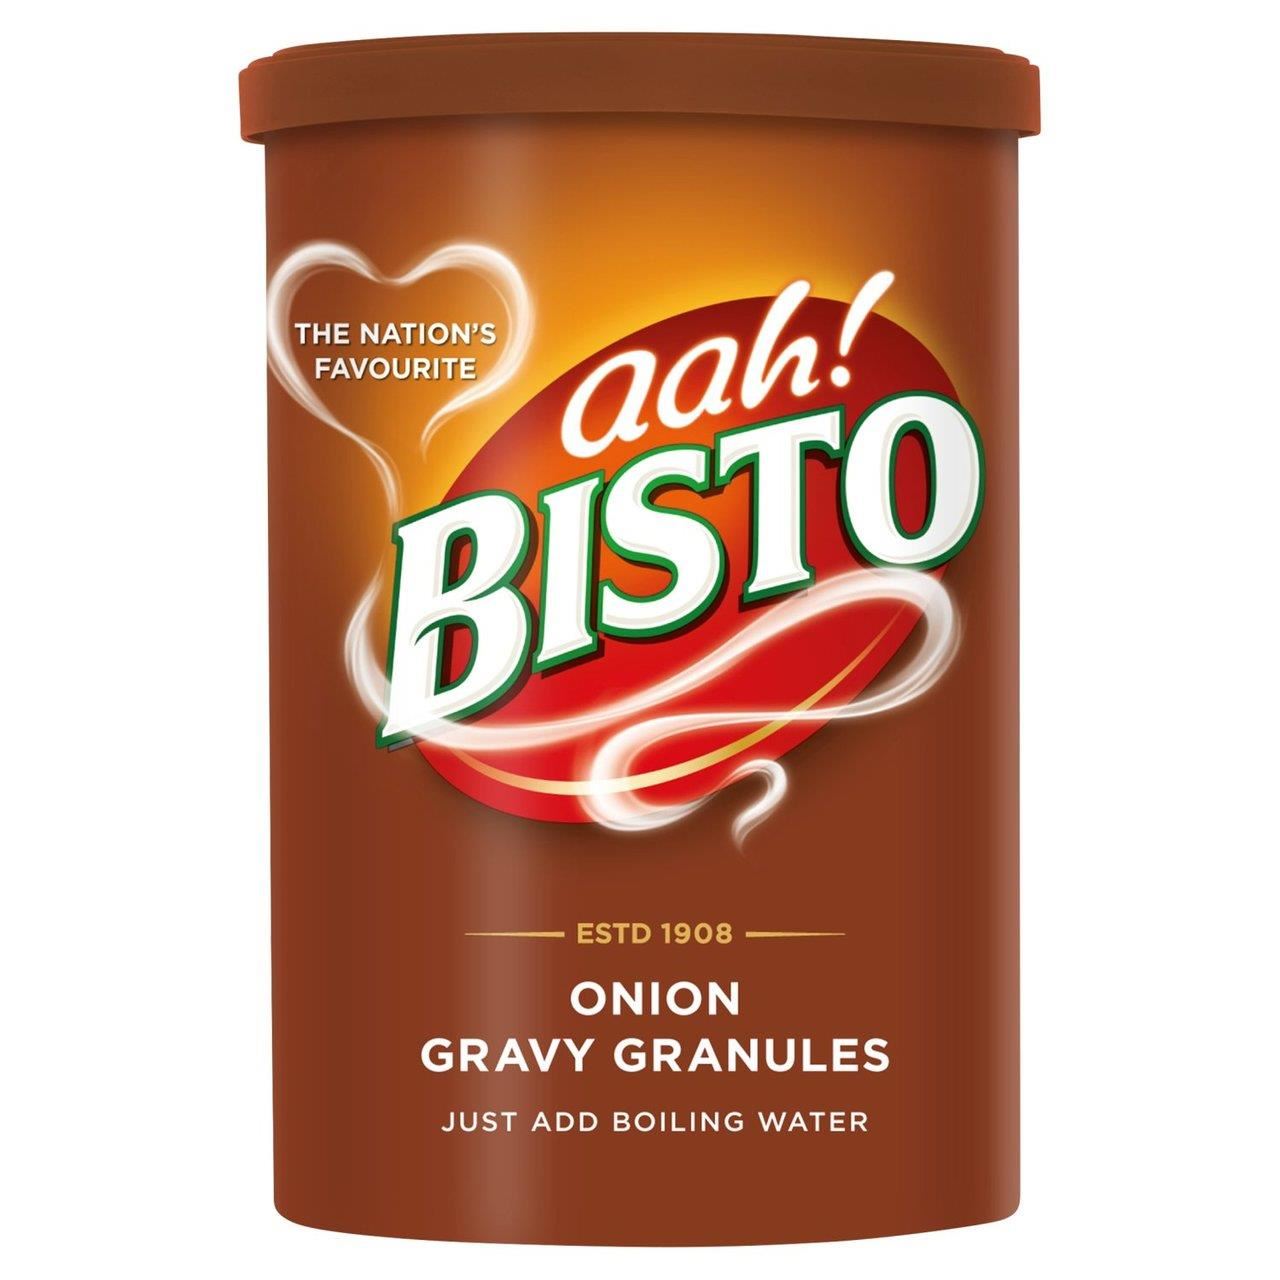 Bisto Onion Gravy Granules Drum 170g